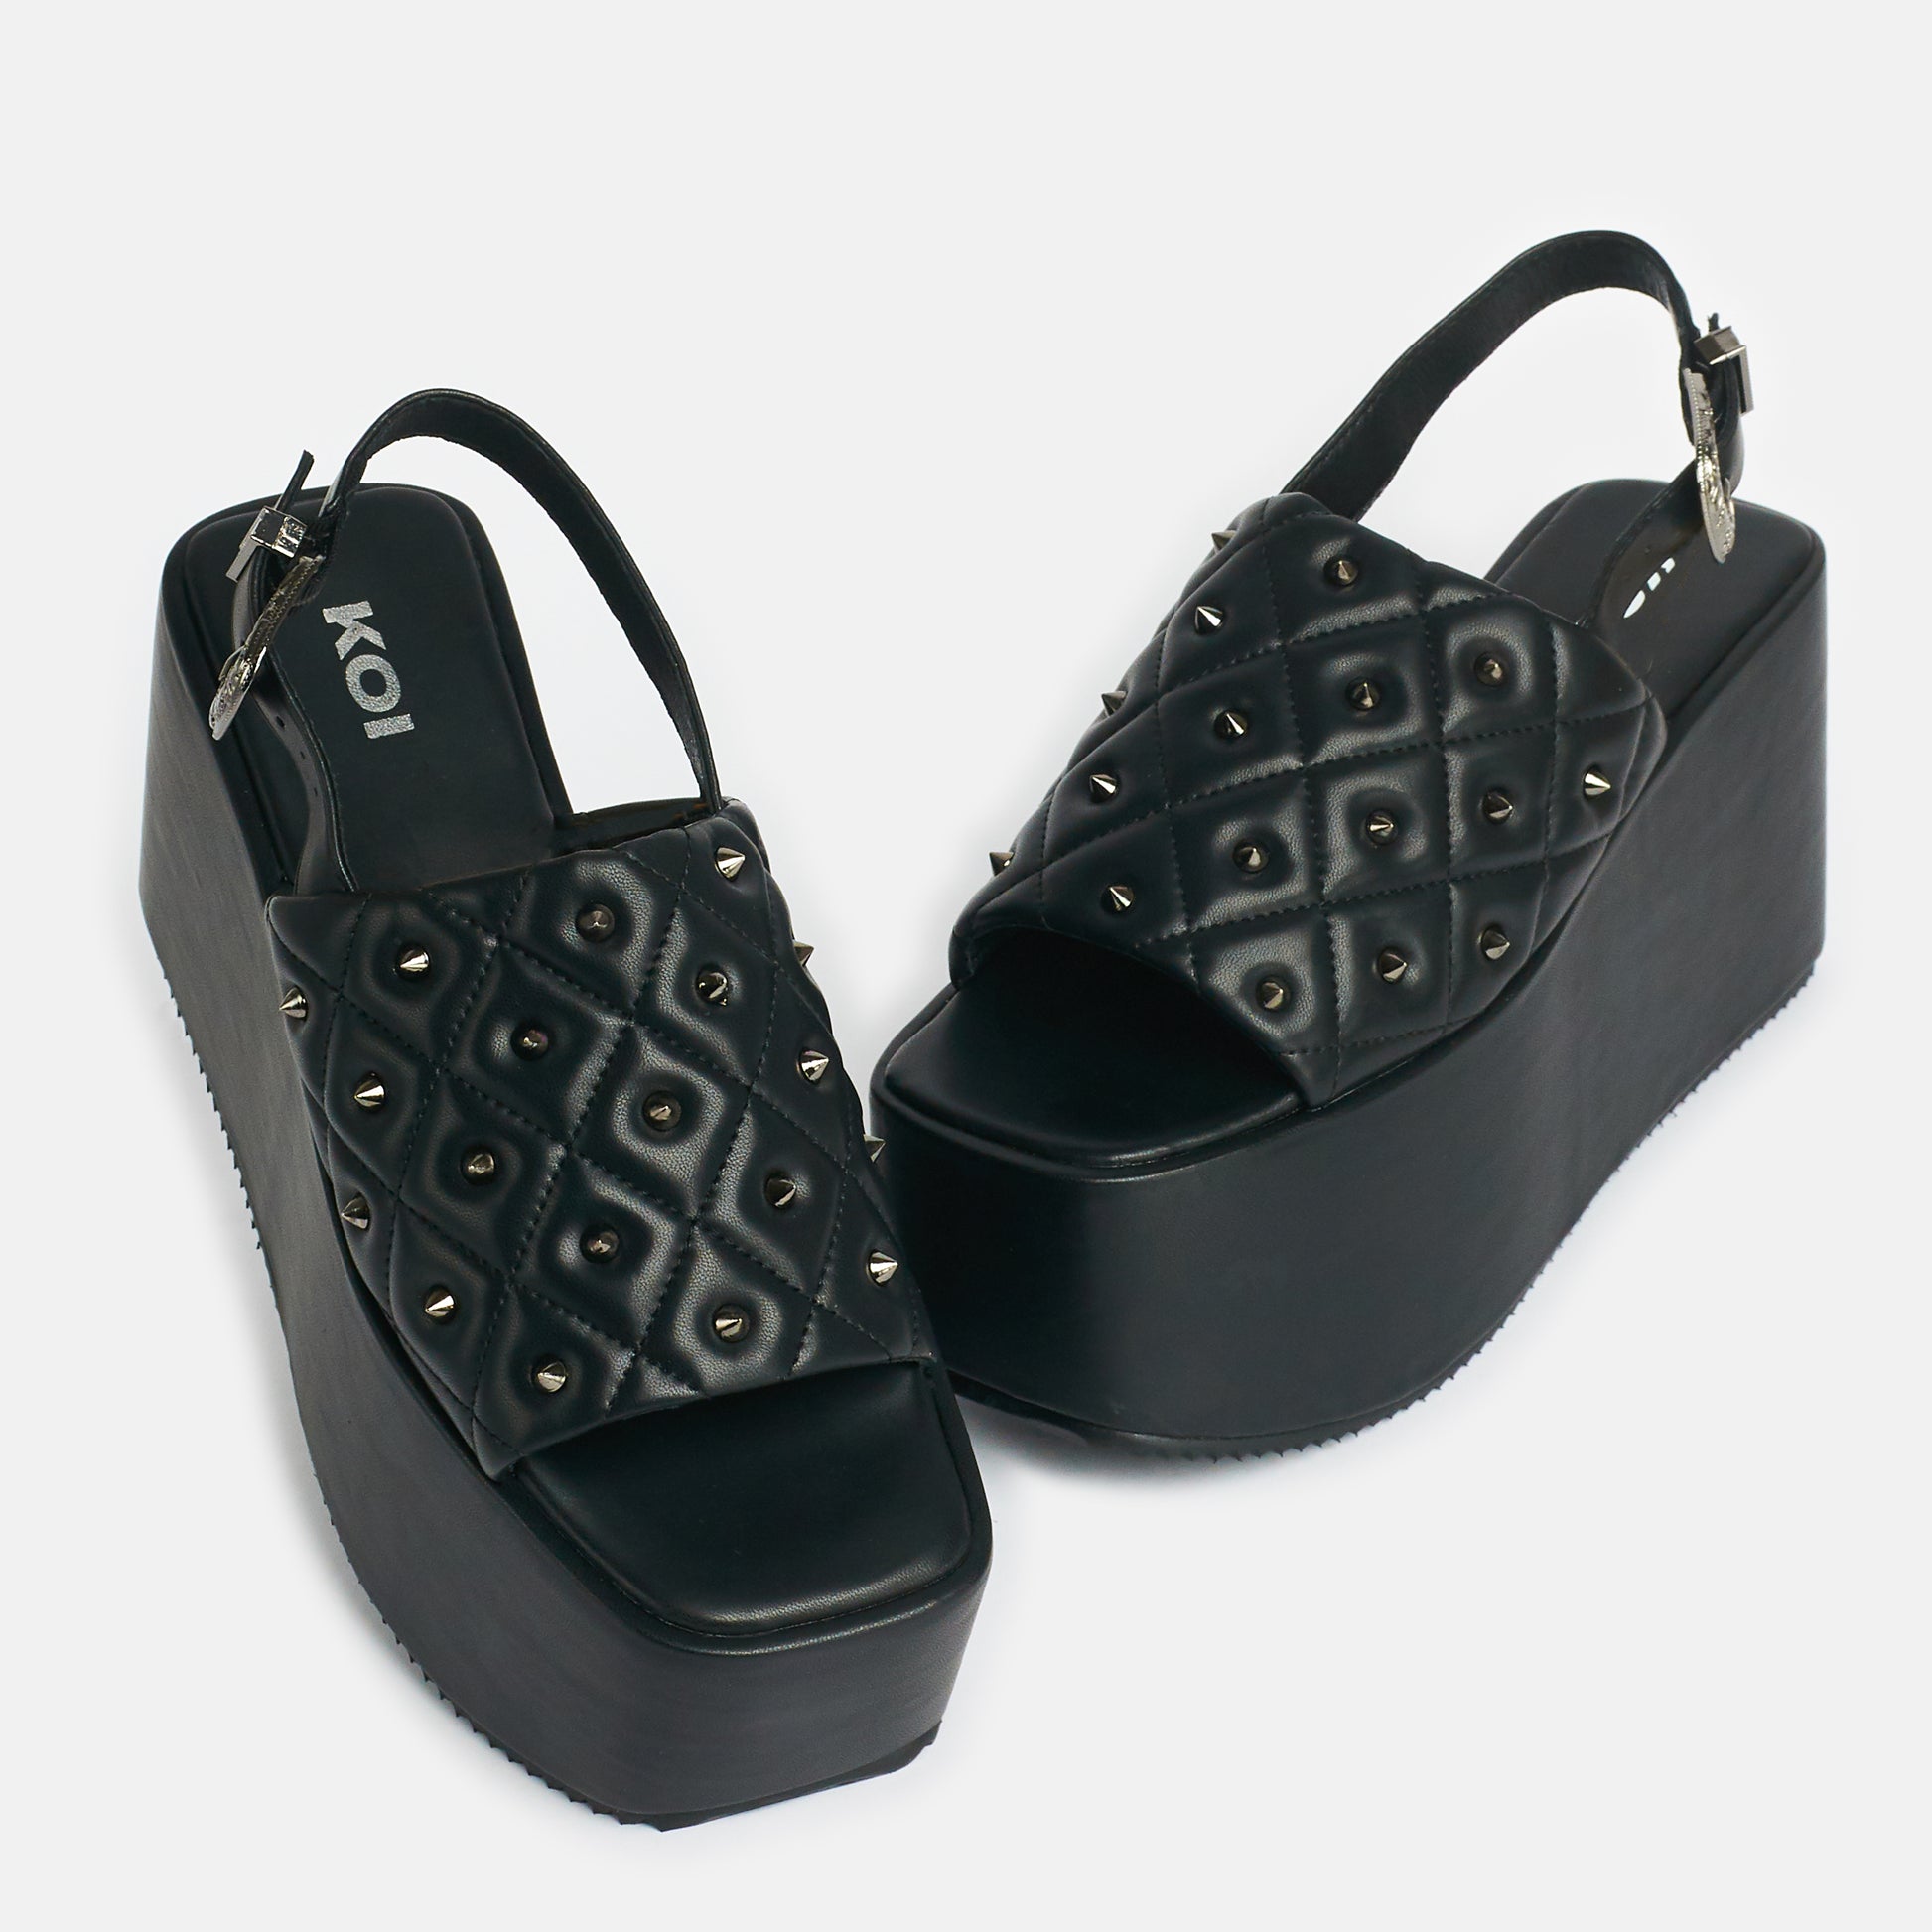 Imperial Web Mega Platform Sandals - Sandals - KOI Footwear - Black - Front and Side View